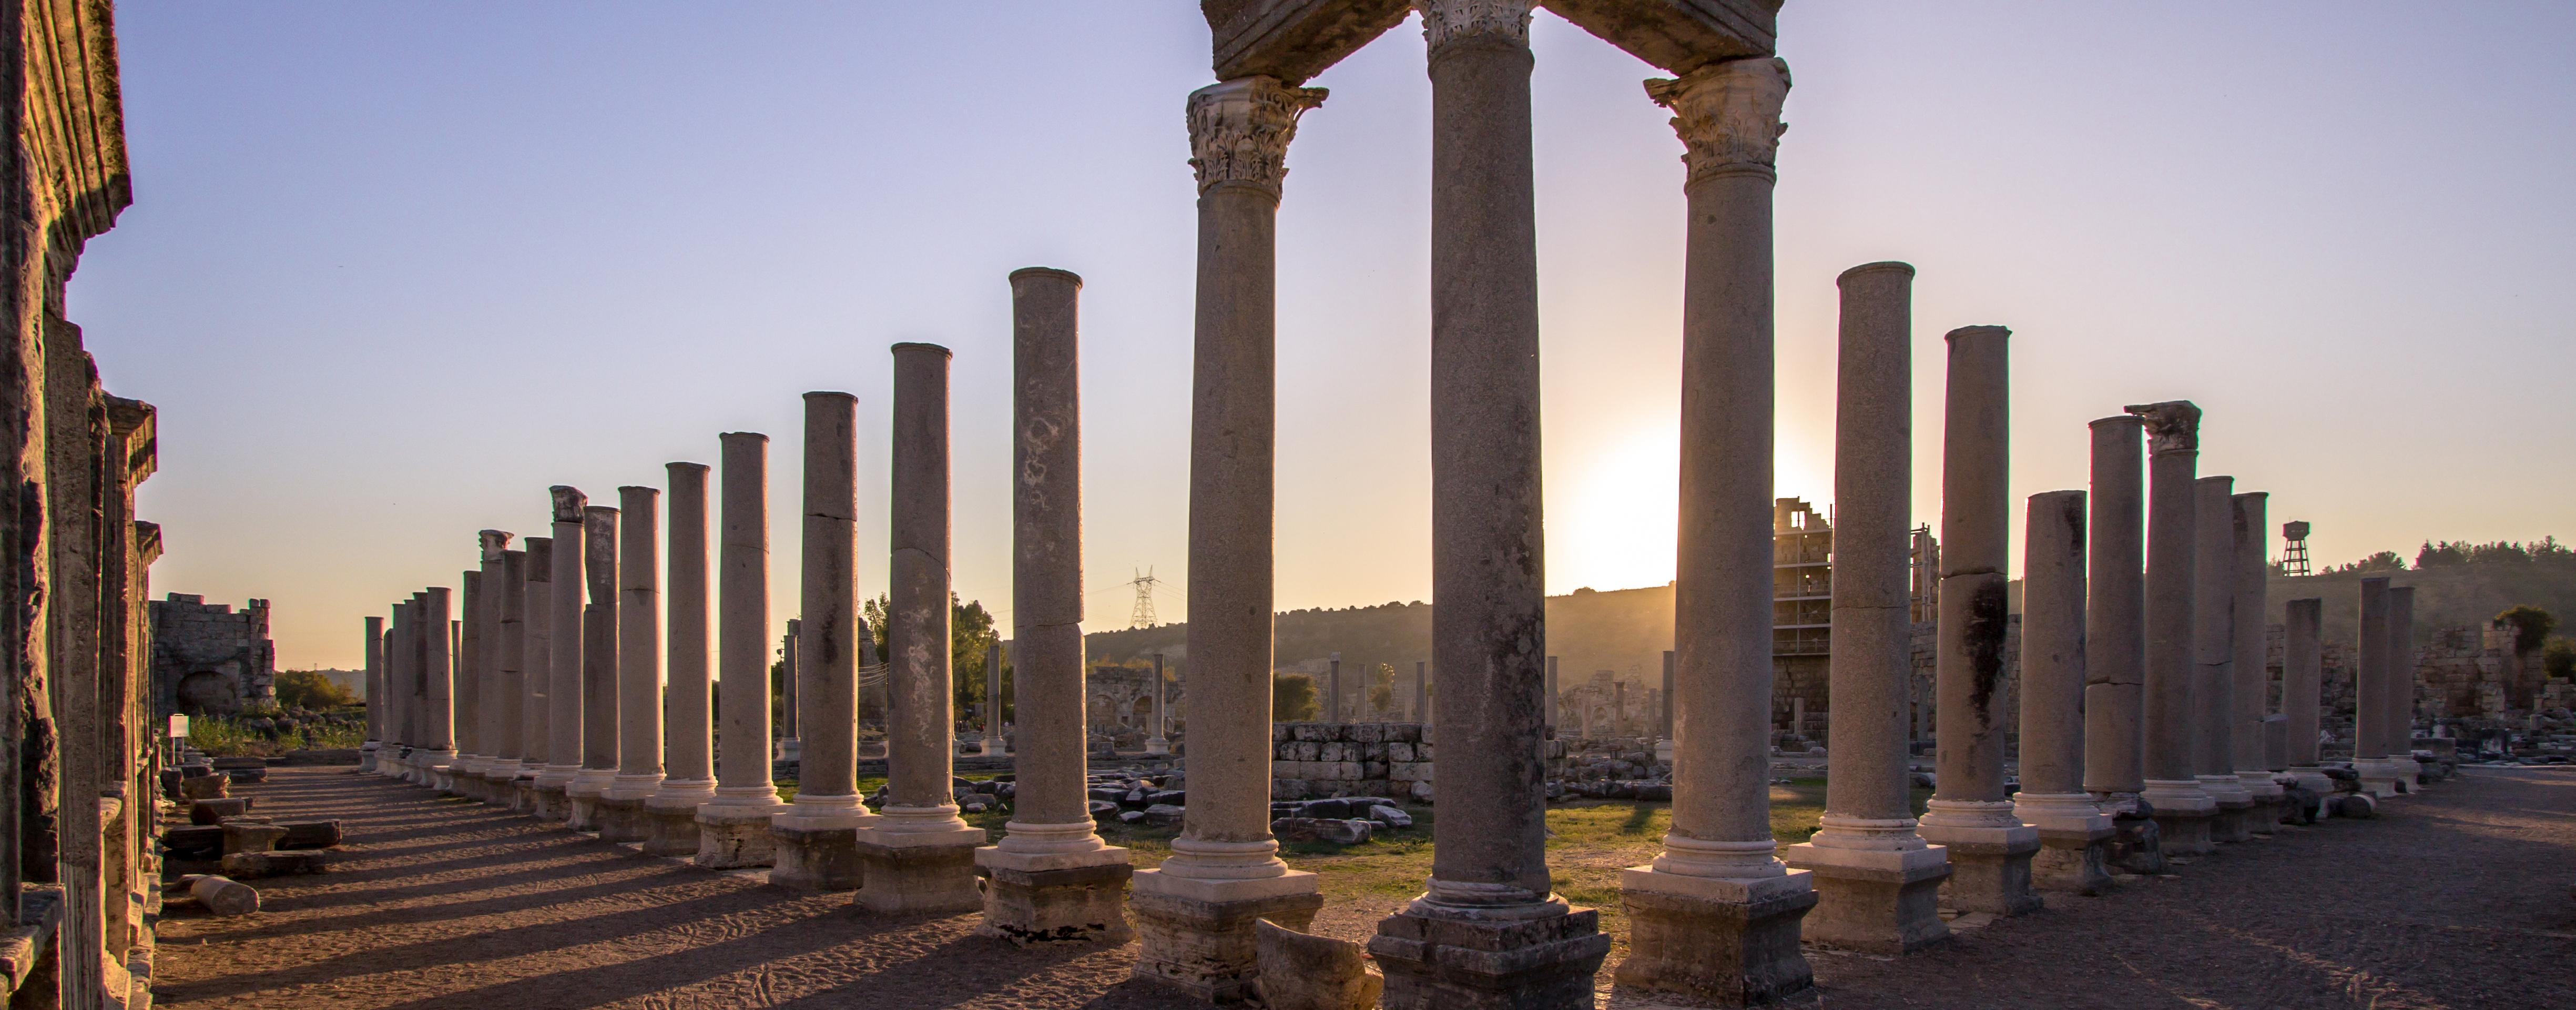 Visita guidata del sito archeologico di Pompei - partenza da Napoli